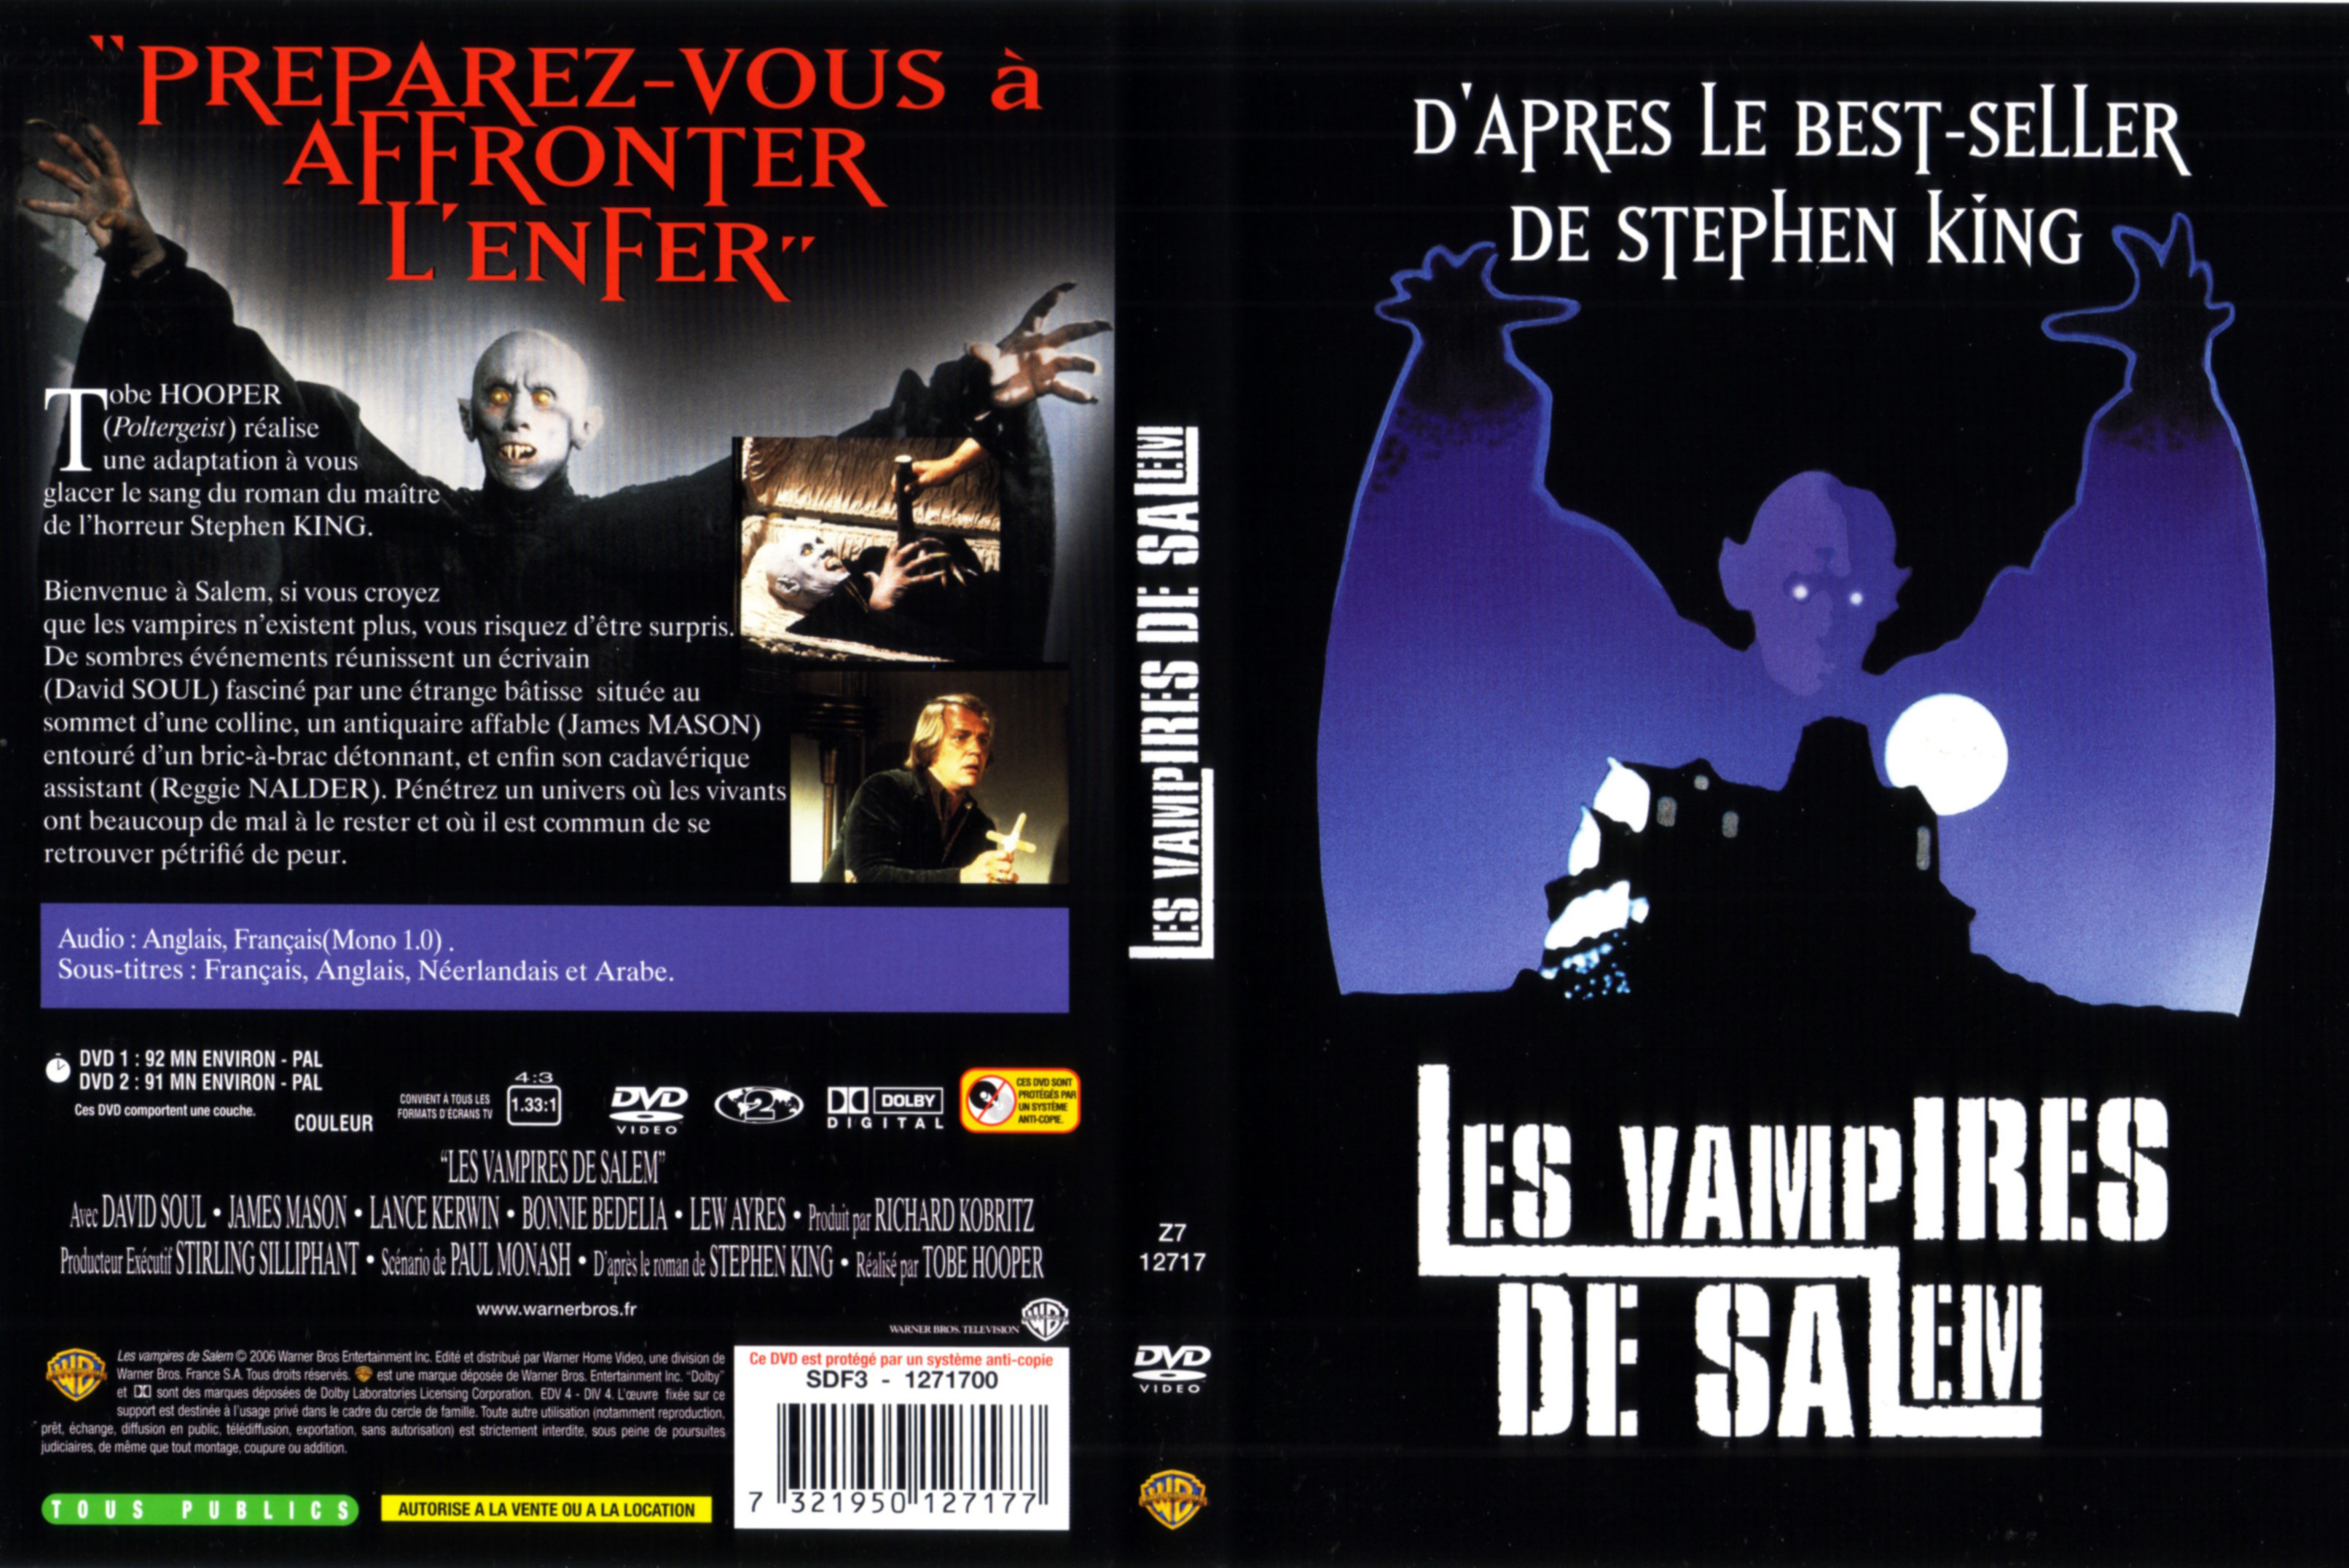 Jaquette DVD Les vampires de salem (1980)